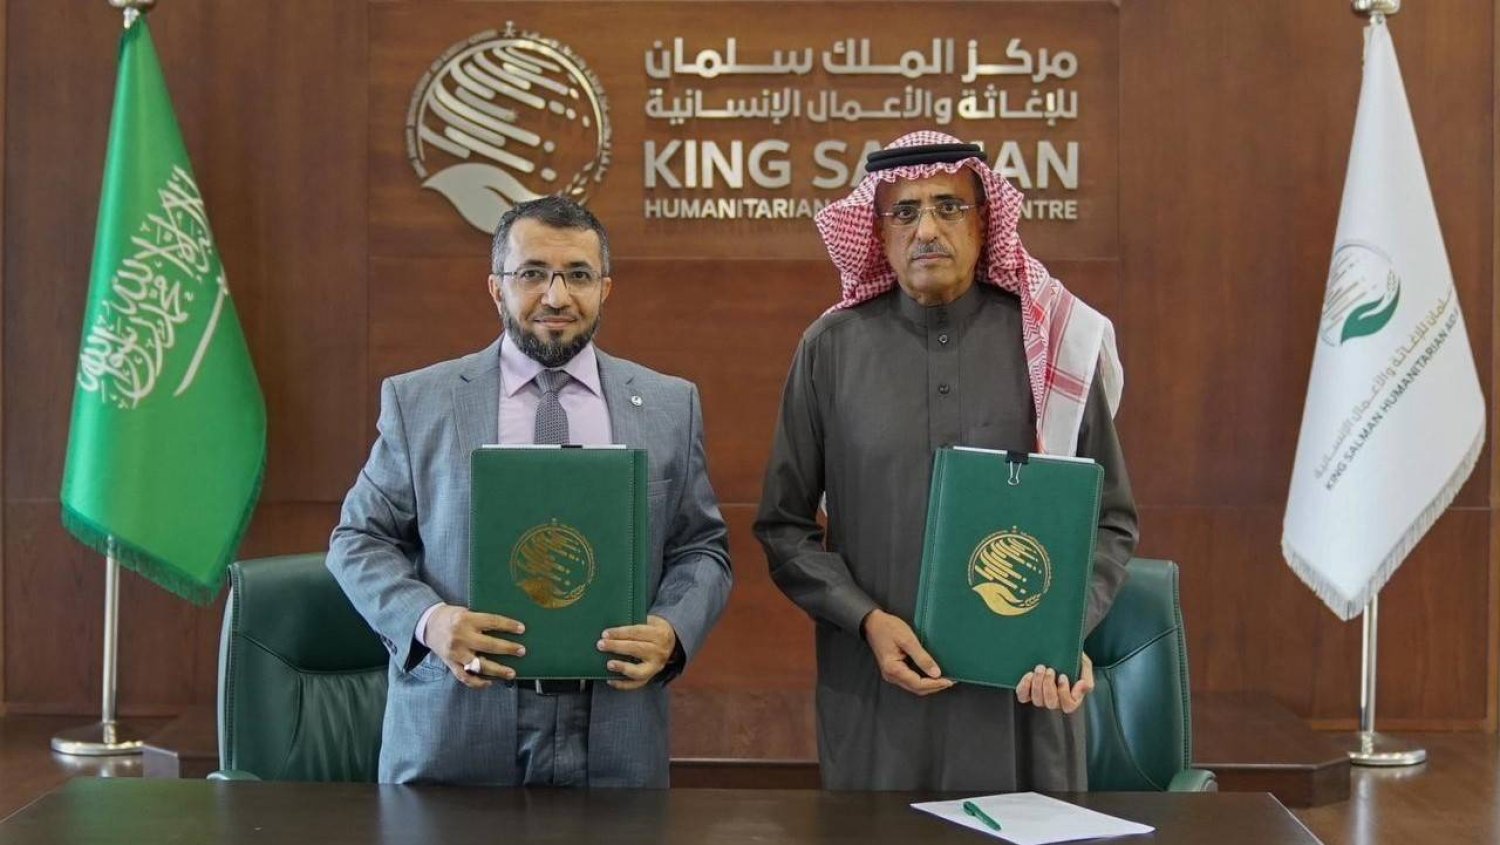 مركز الملك سلمان يوقع اتفاقية لحفر وتطوير آبار المياه في 3 محافظات يمنية